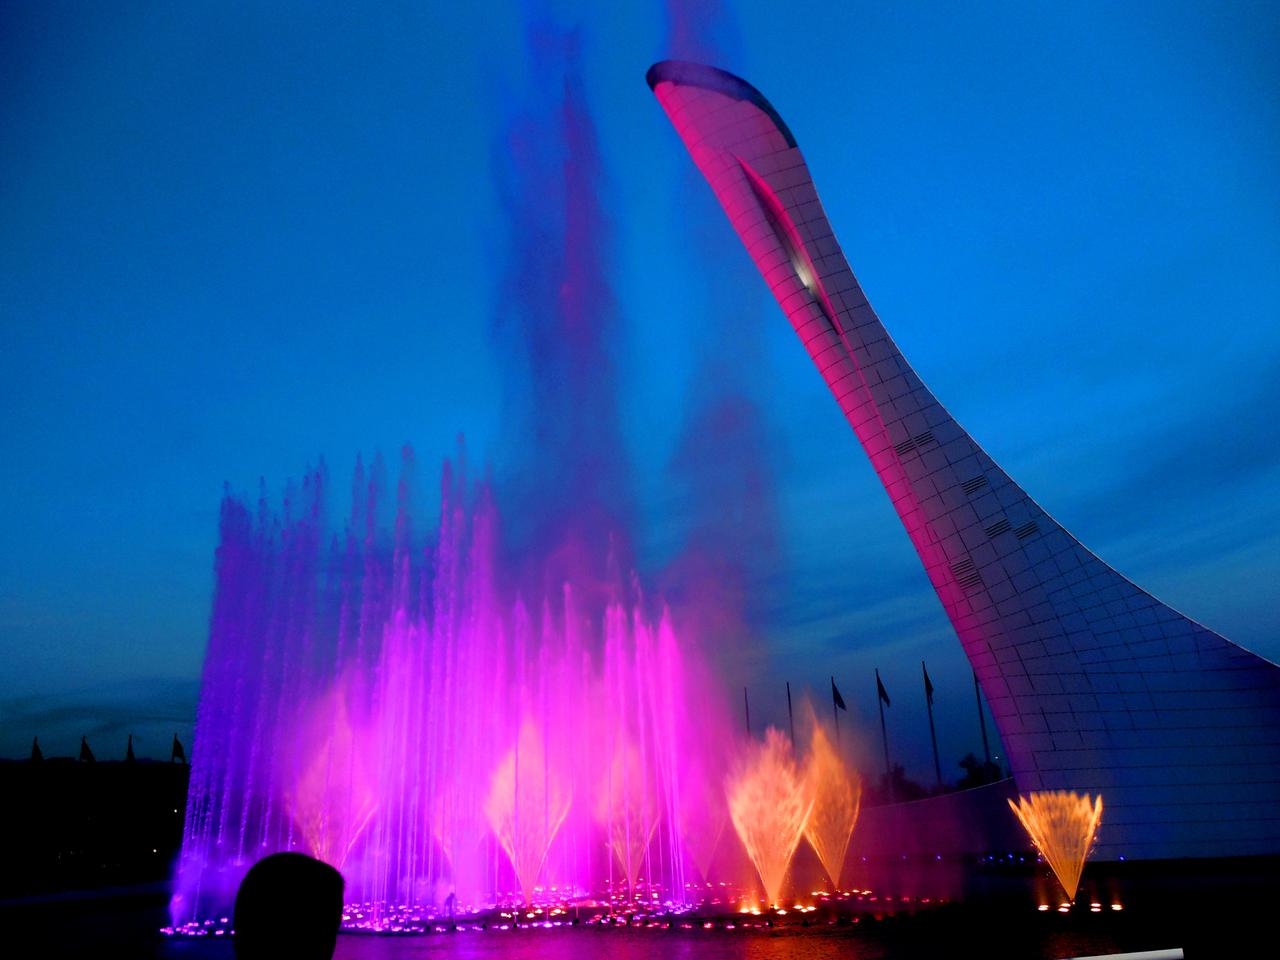 Олимпийский парк. Вечернее шоу музыкальных фонтанов под музыку Чайковского. Супер!!!